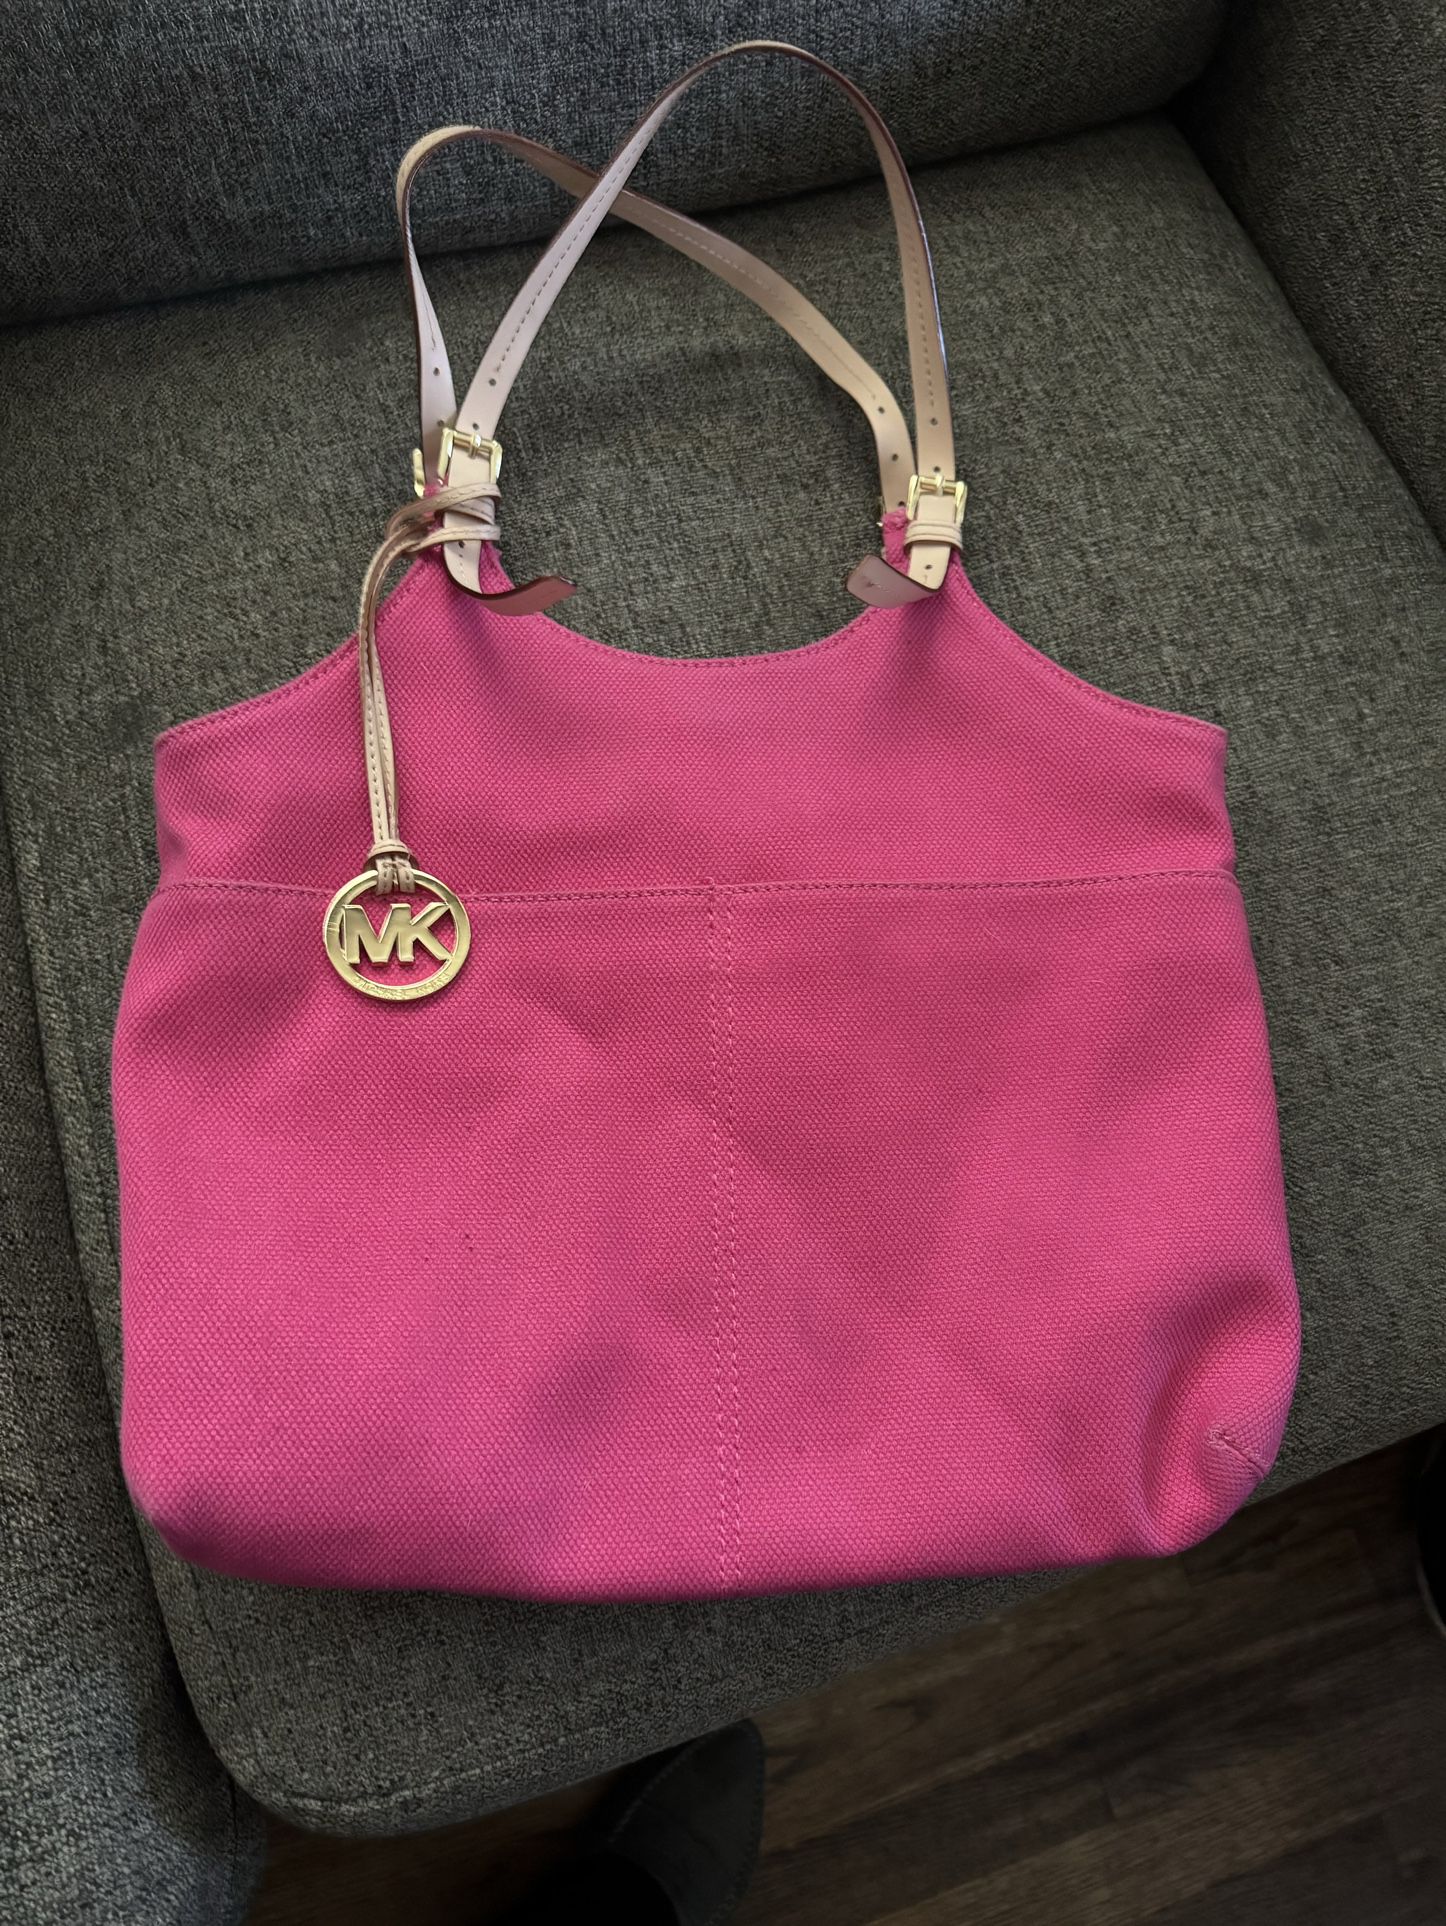 🍀💕Michael Kors Pink Bag Very Beautiful